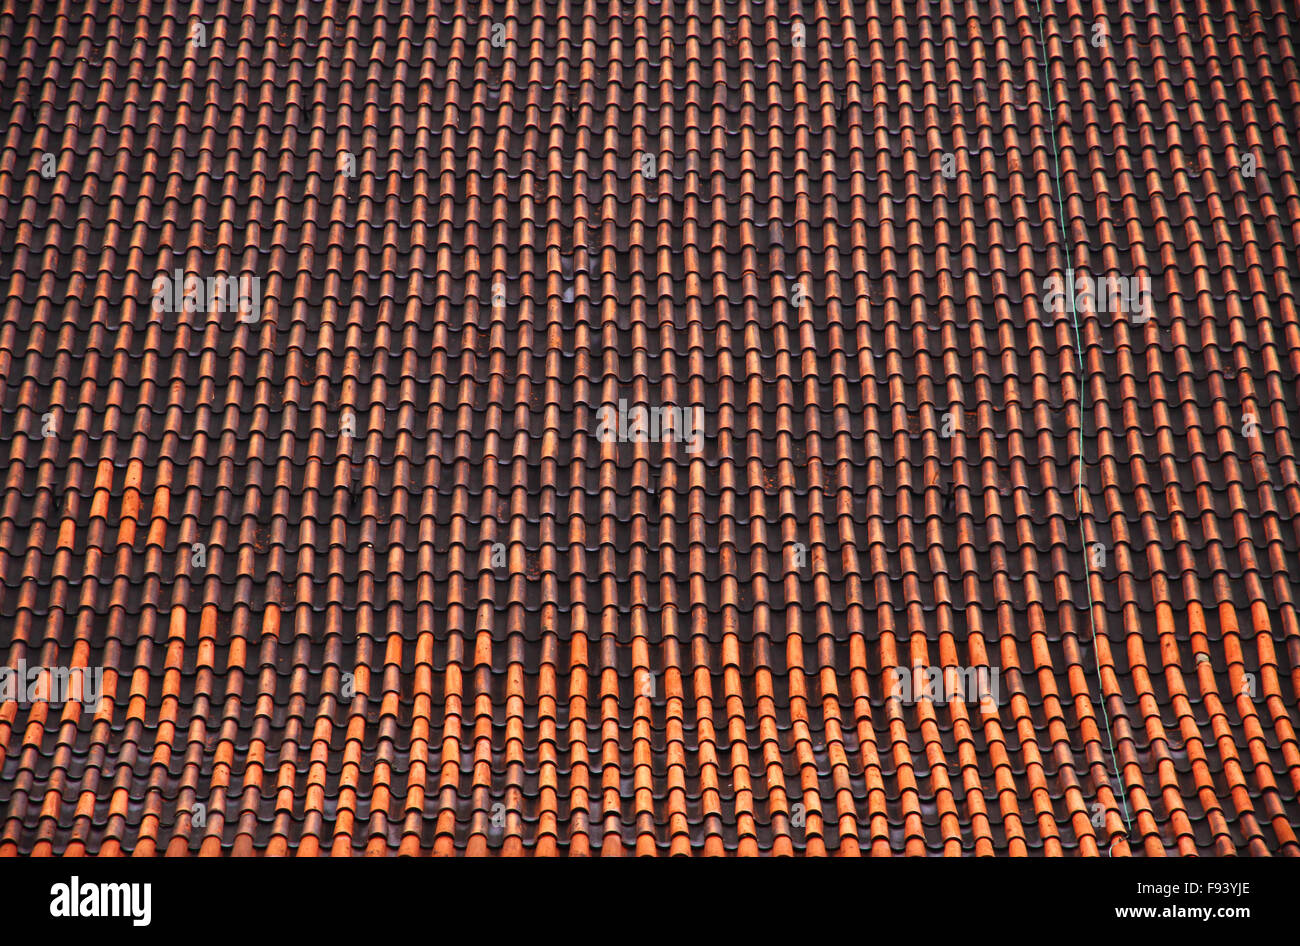 Un toit de tuiles brunes avec une répétition de motifs Banque D'Images